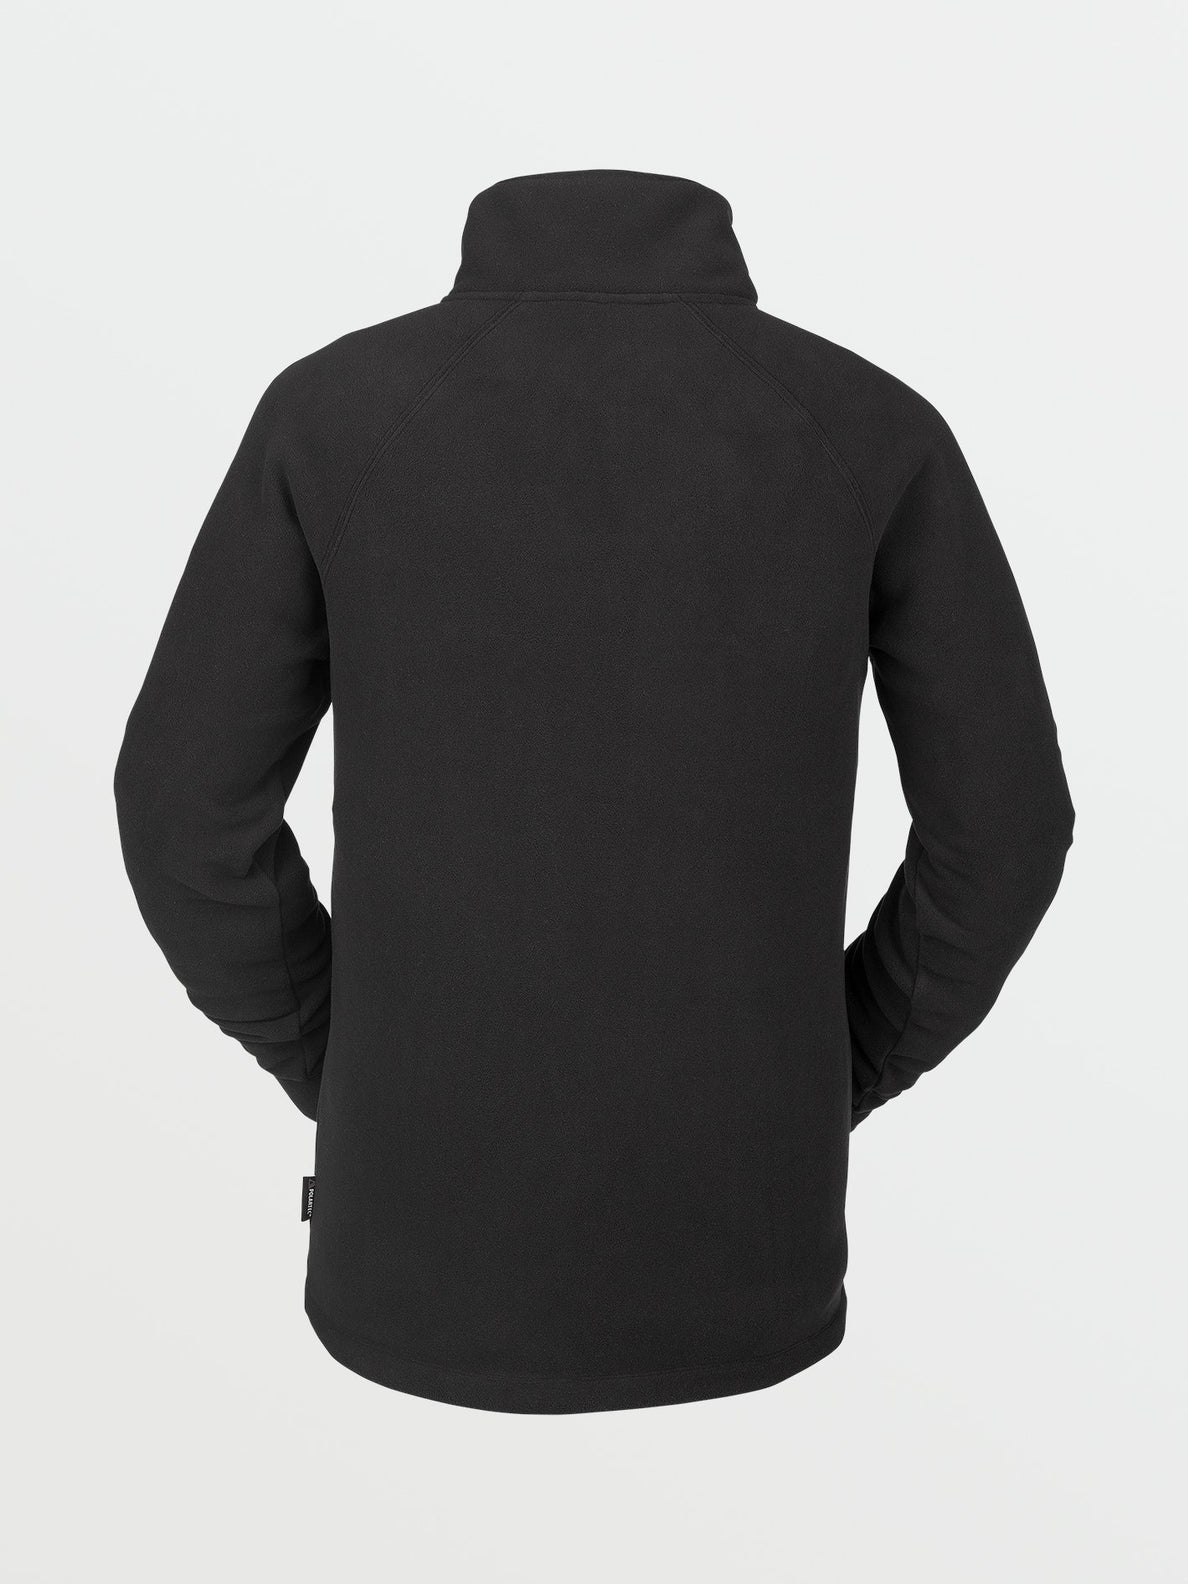 Polartec 1/2 Zip Sweatshirt - BLACK (G4152200_BLK) [B]